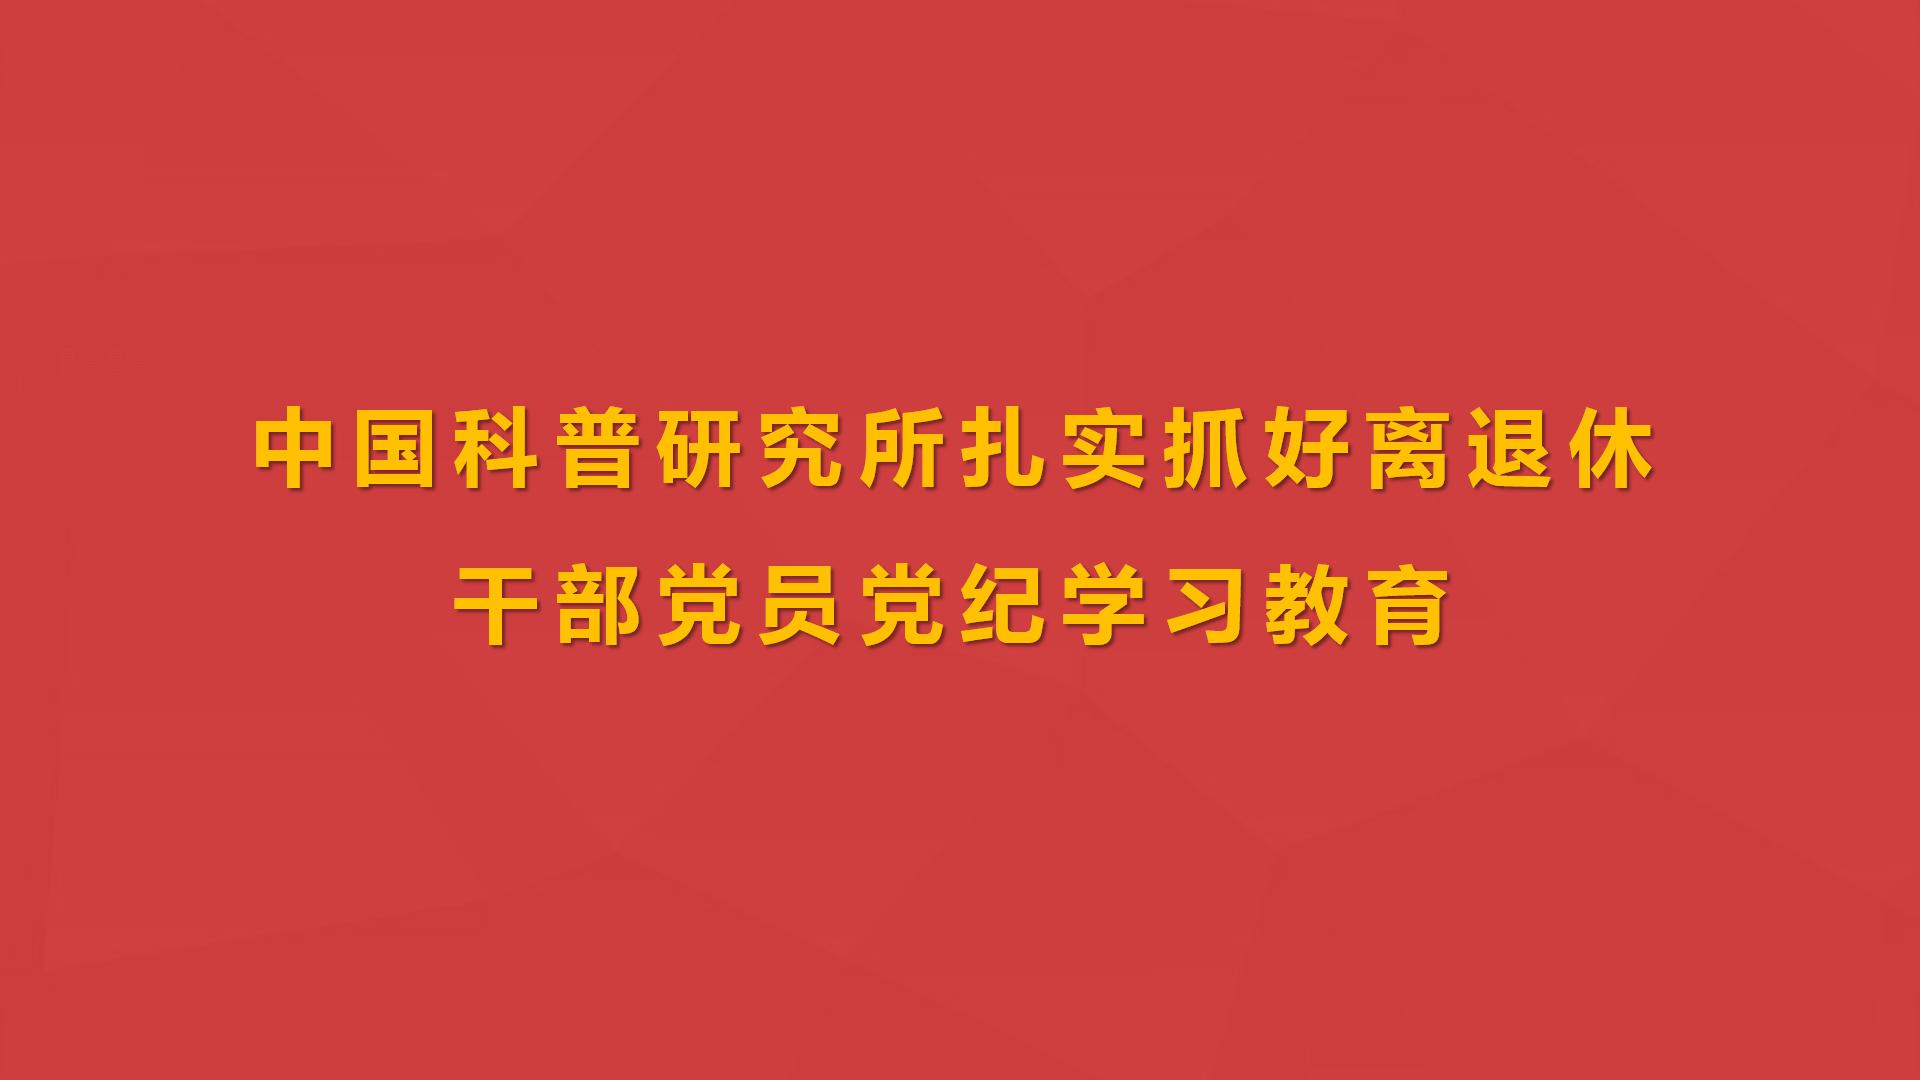 中国科普研究所扎实抓好离退休干部党员党纪学习教育